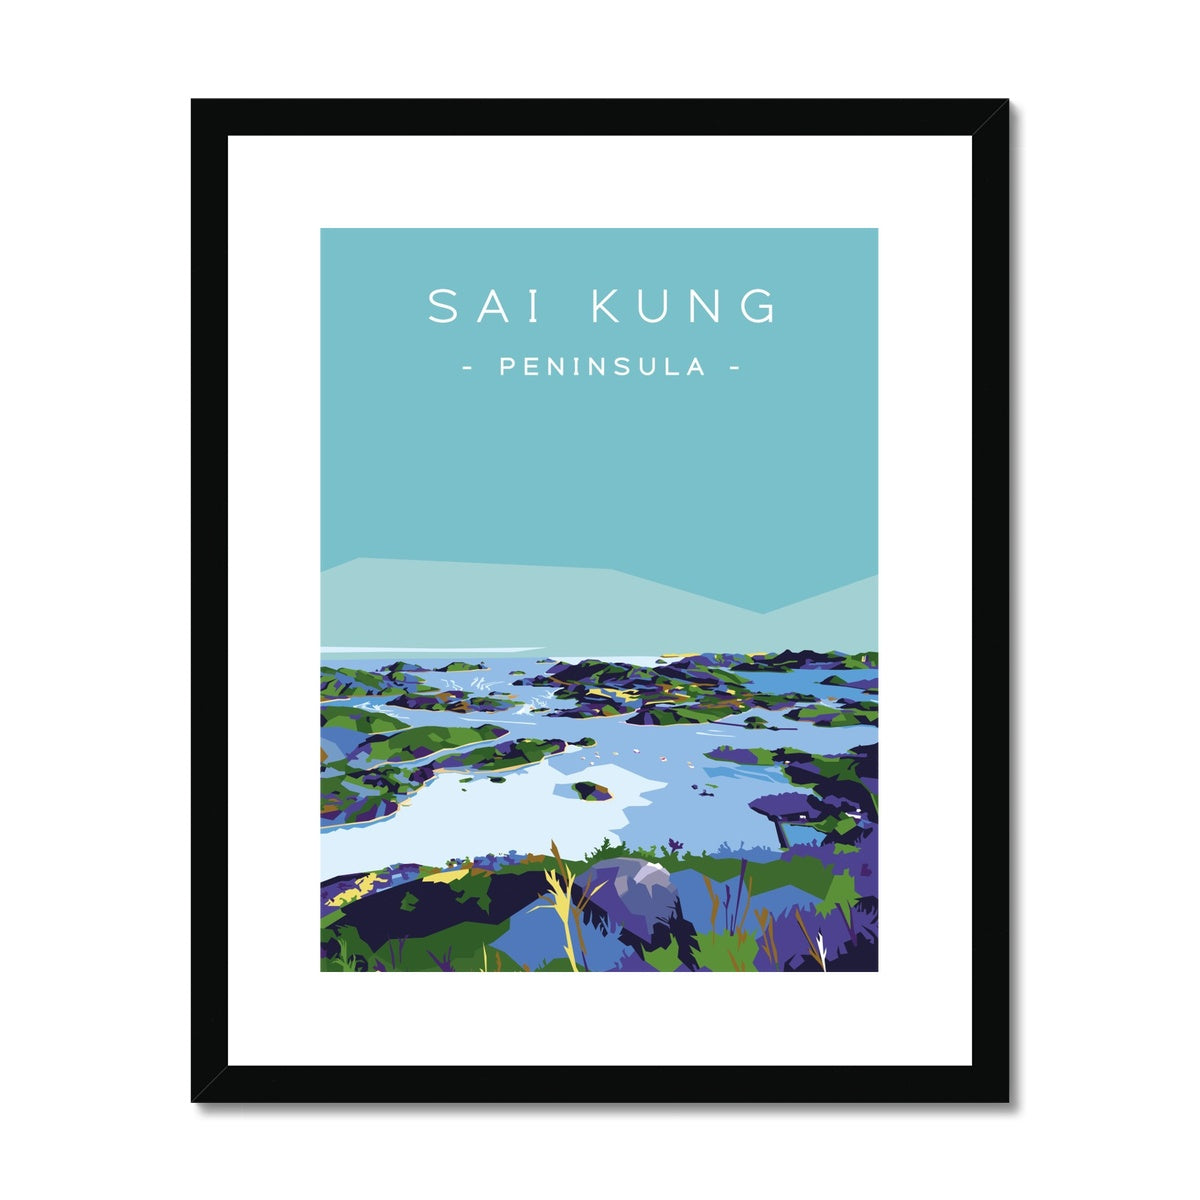 Hong Kong Travel - Sai Kung Peninsula Framed & Mounted Print